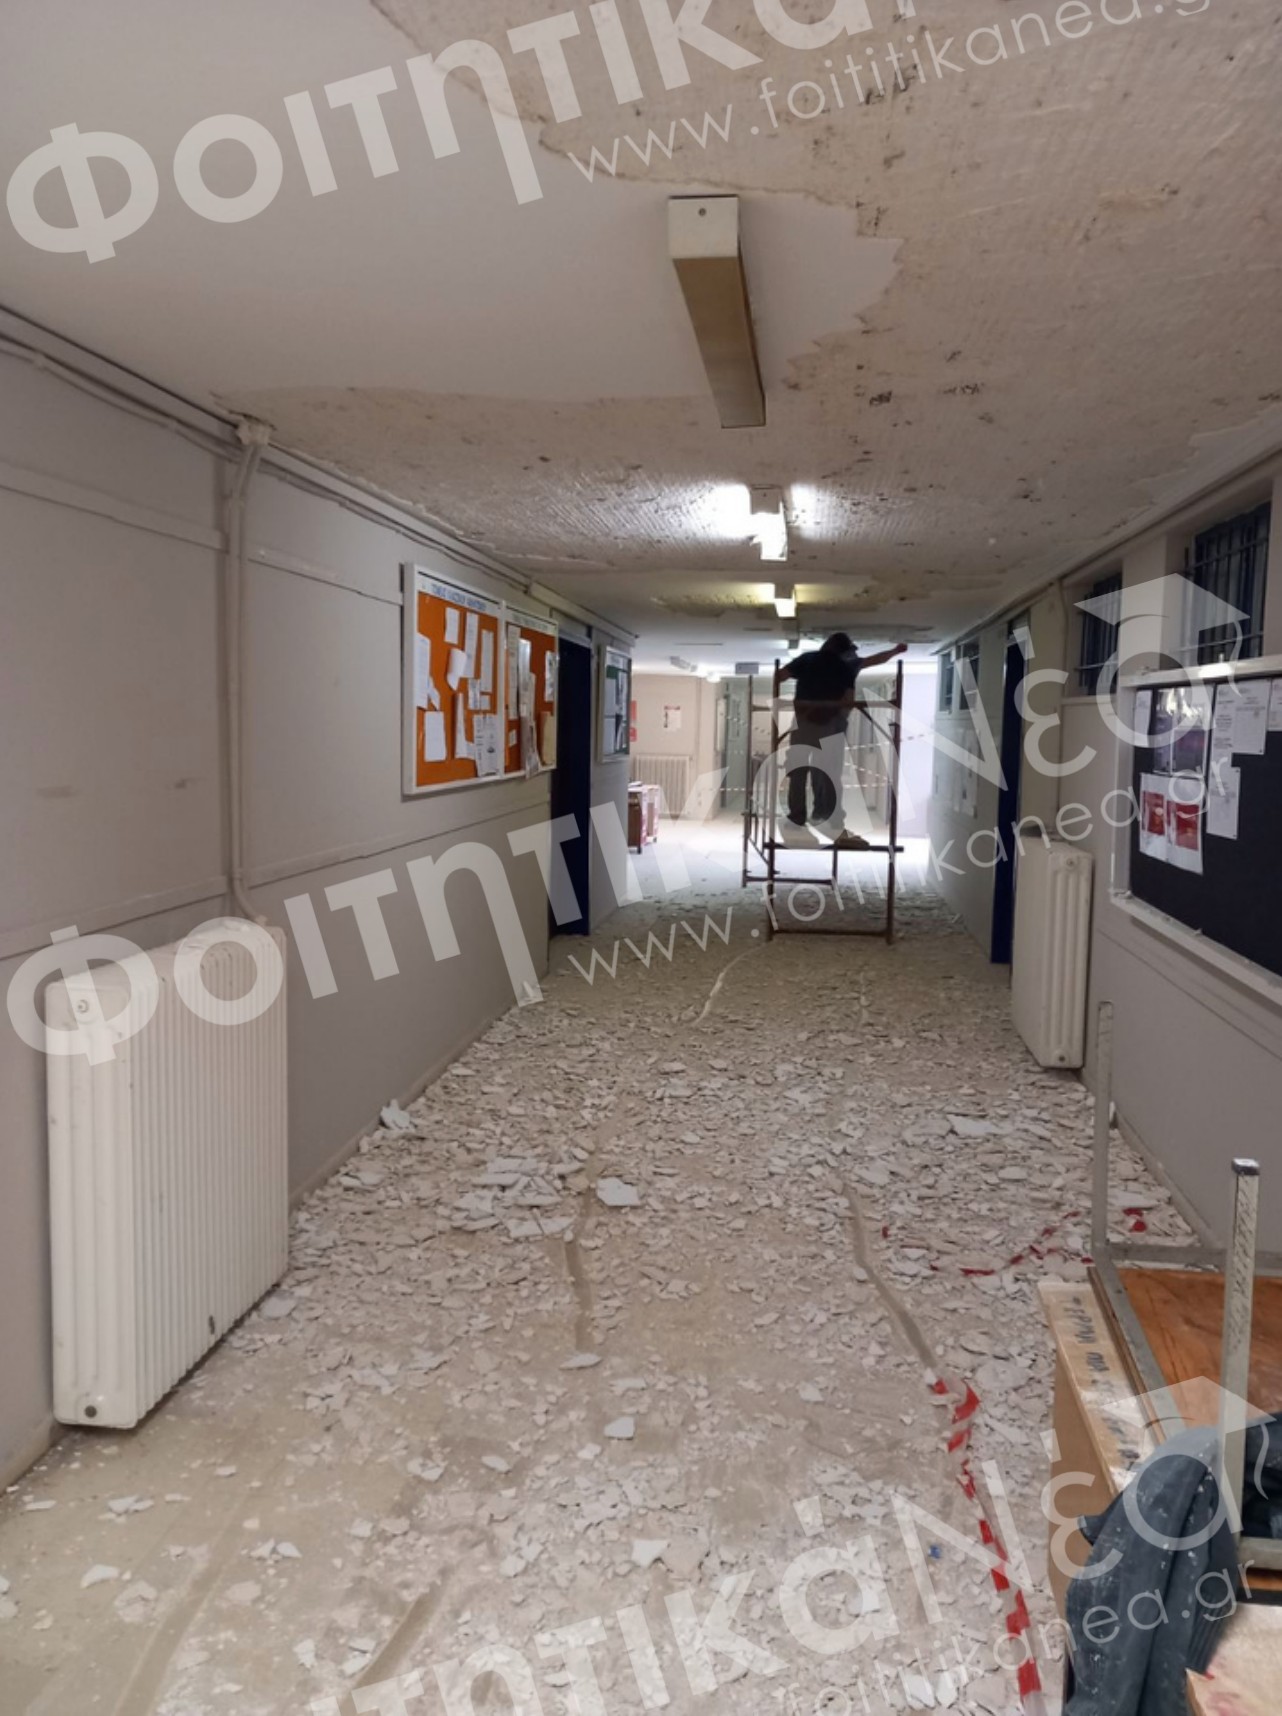 ΕΚΠΑ: Έπεσαν οι σοβάδες ταβανιού σε διάδρομο Σχολής / ΕΙΚΟΝΕΣ